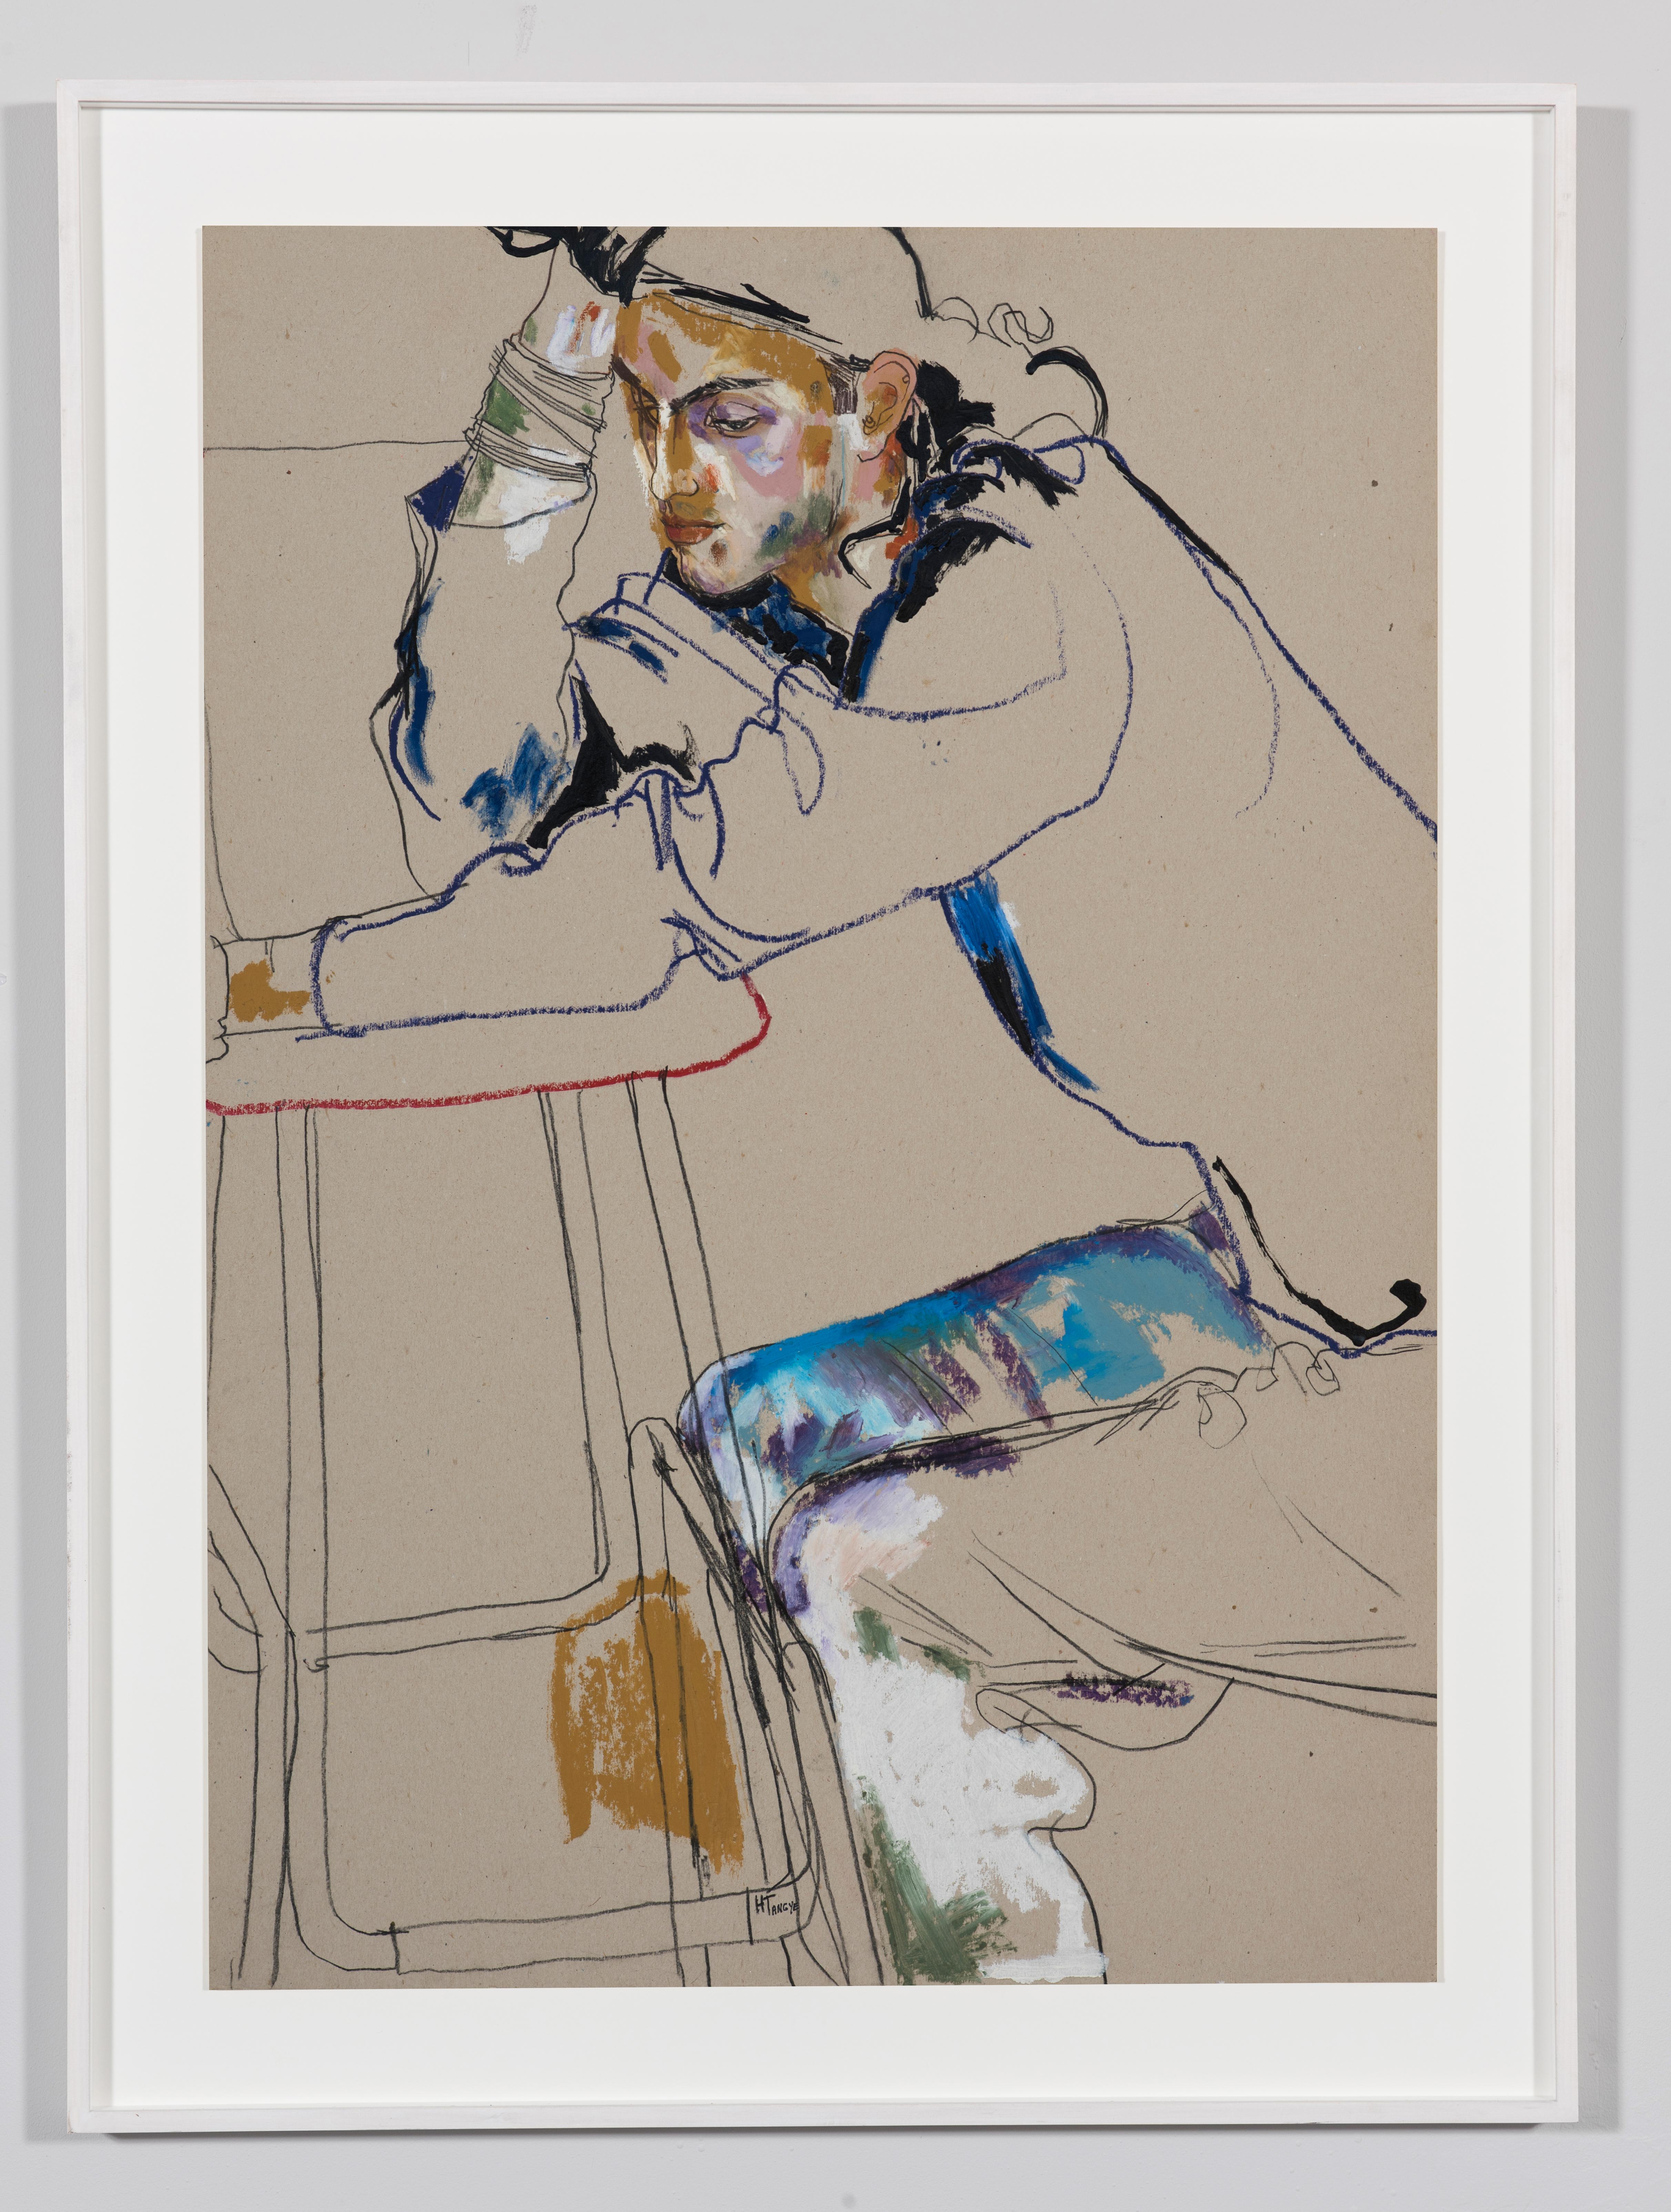 Tom Cawson (Sitting - Hand on Head), Techniques mixtes sur carton gris - Painting de Howard Tangye